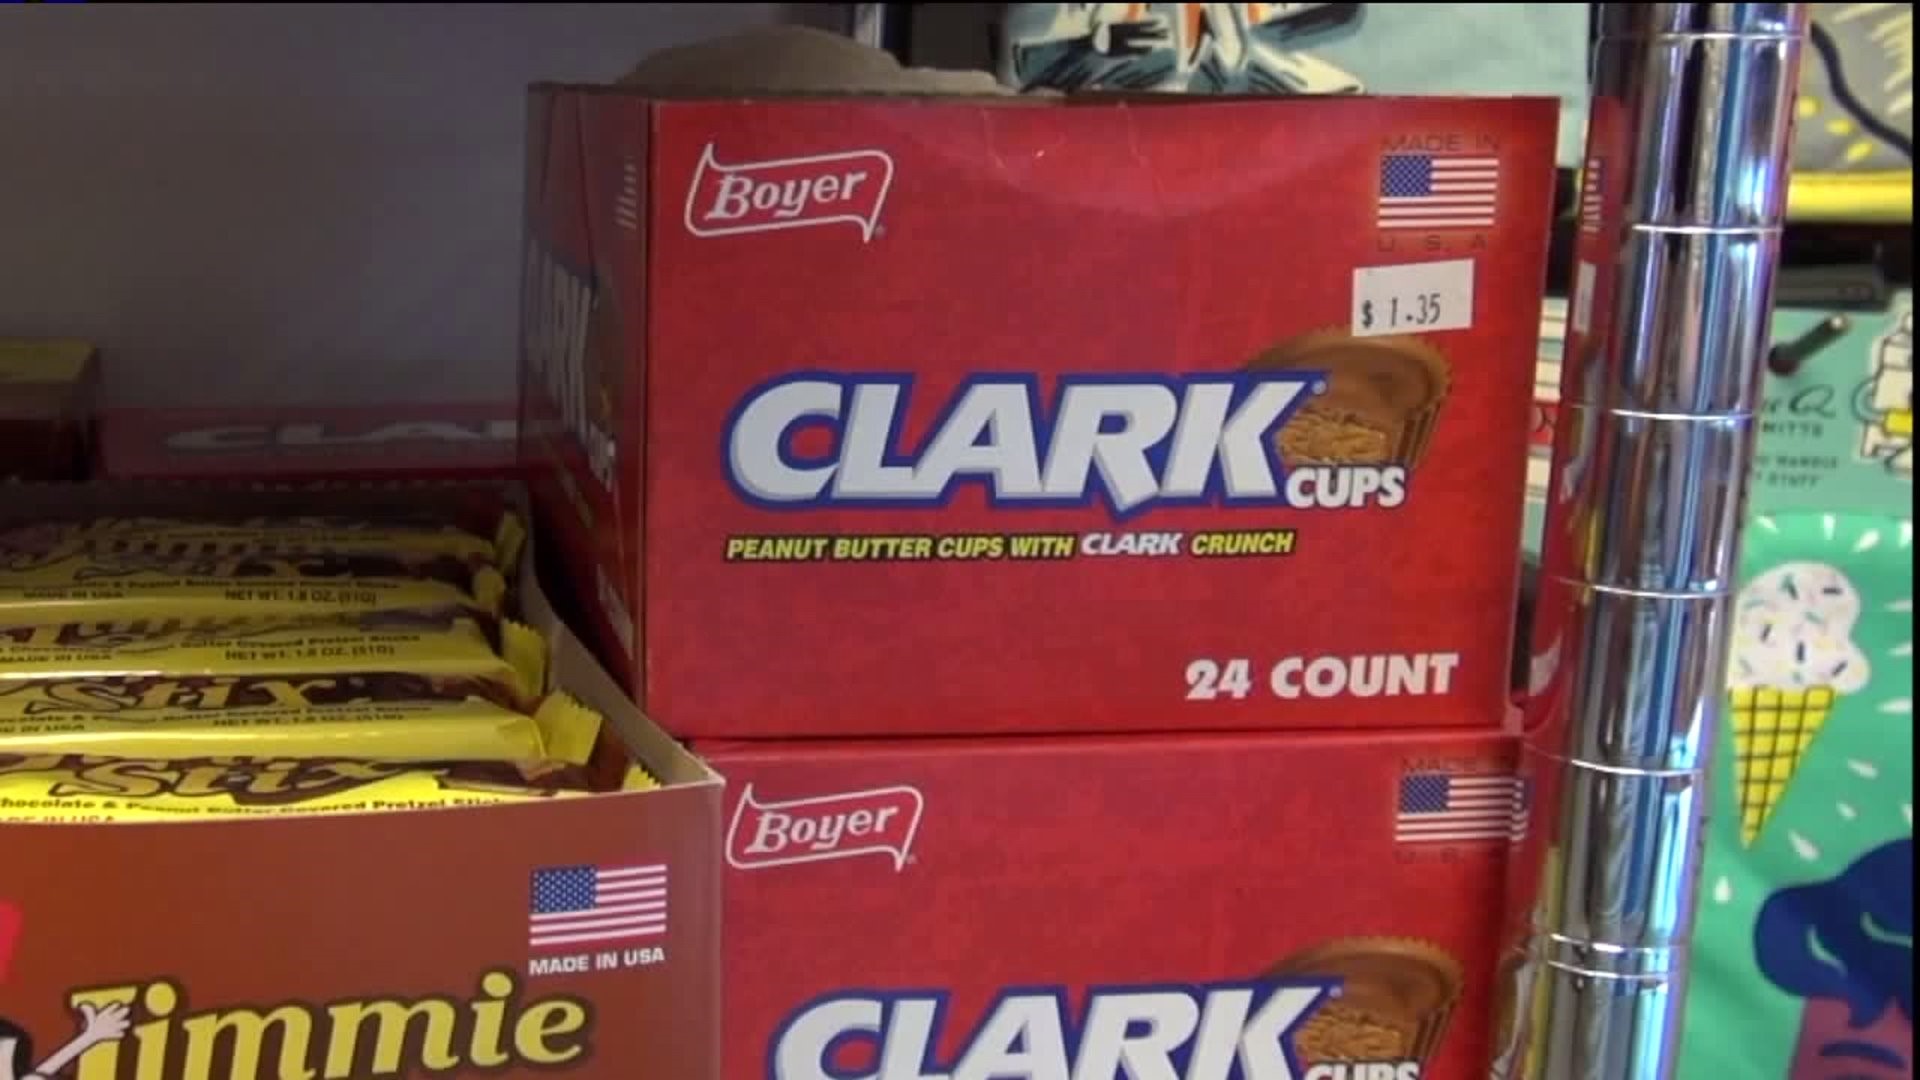 Taste Test: Clark Cups Vs. Original Clark Bar